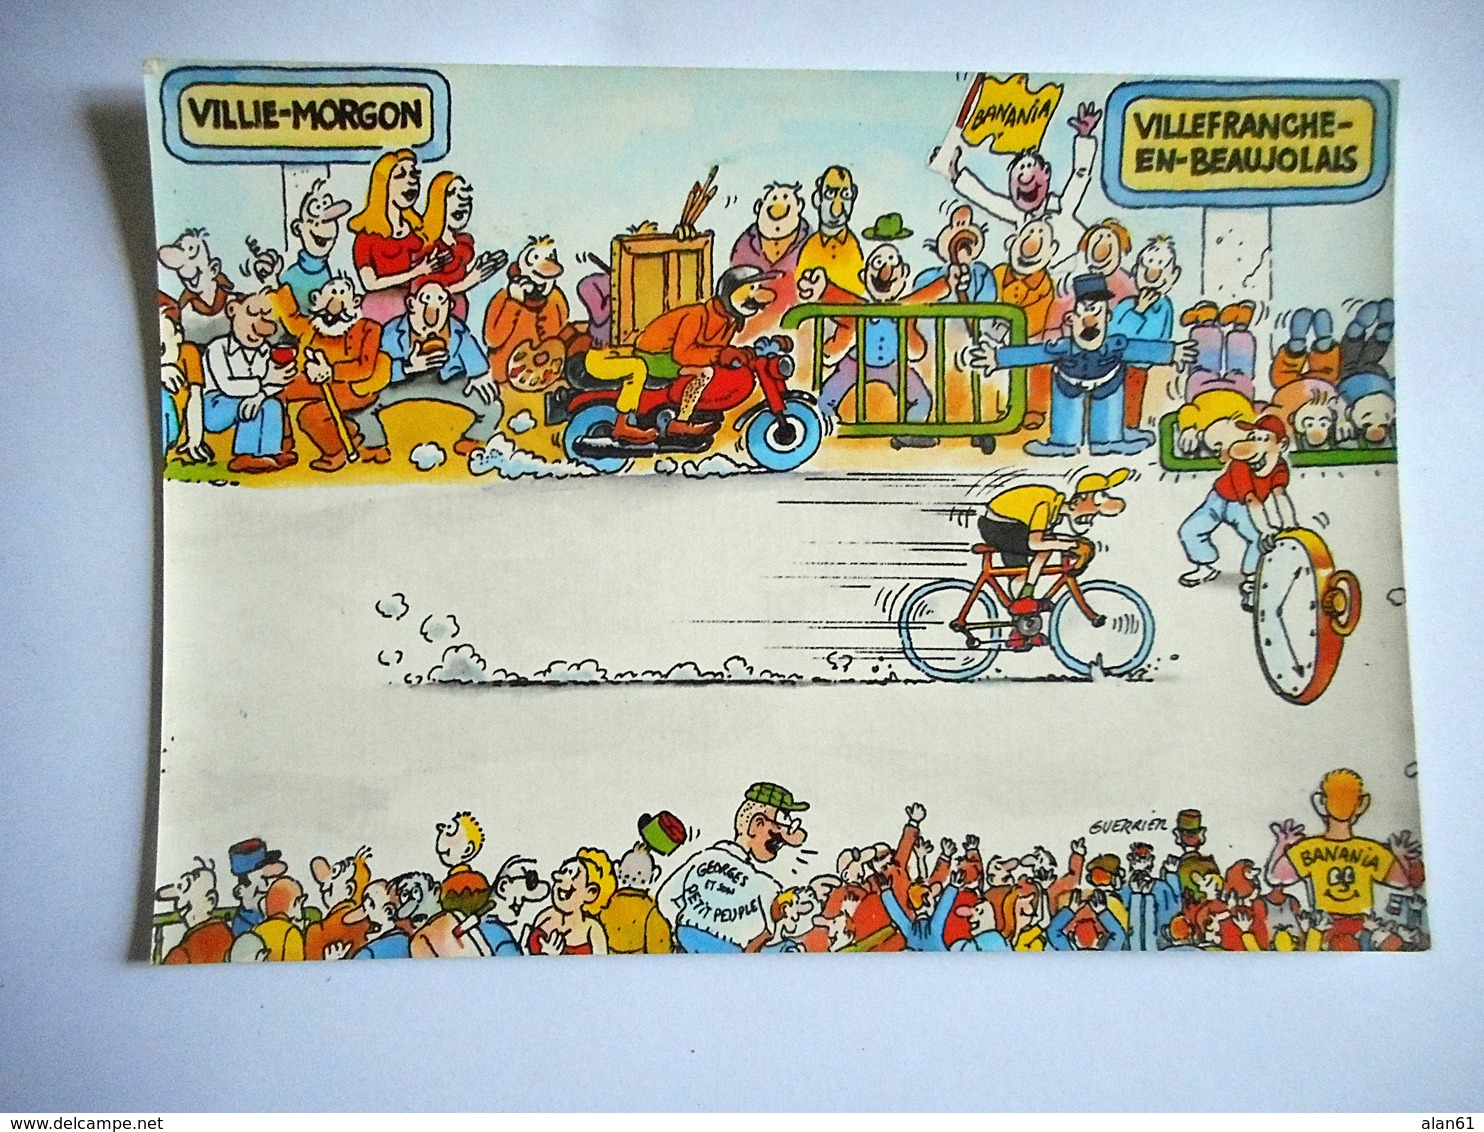 CPM TOUR DE FRANCE 1984 22 EME ETAPE VILLIE MORGON VILLEFRANCHE EN BEAUJOLAIS Pub BANANIA - Cycling